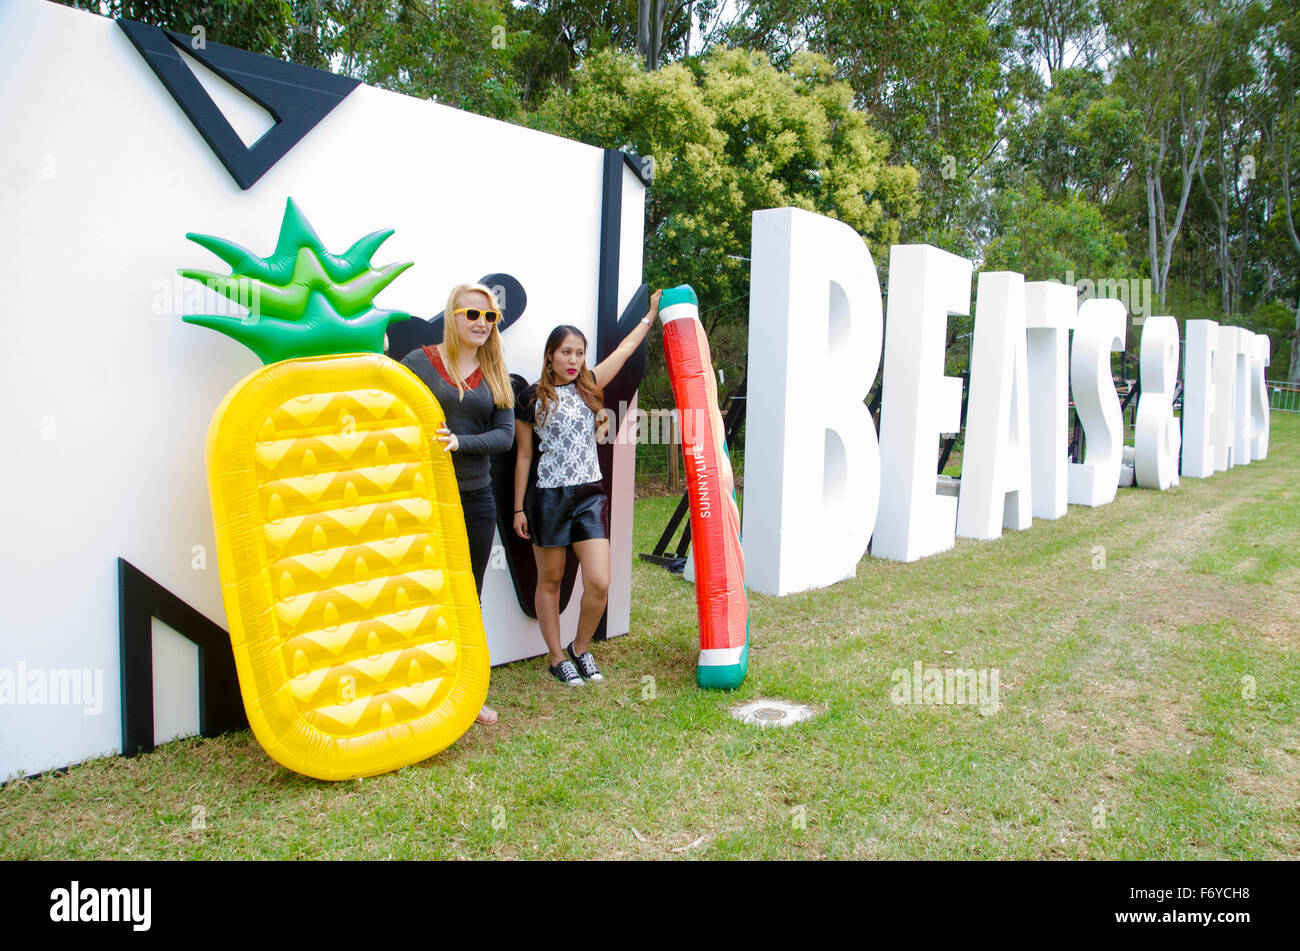 Sydney, Australia. 21 Novembre, 2015. MTV battiti e mangia Music Festival visualizzazione del logo. Il festival ha avuto luogo a Parramatta Park di Sydeny west. Credito: mjmediabox/Alamy Live News Foto Stock